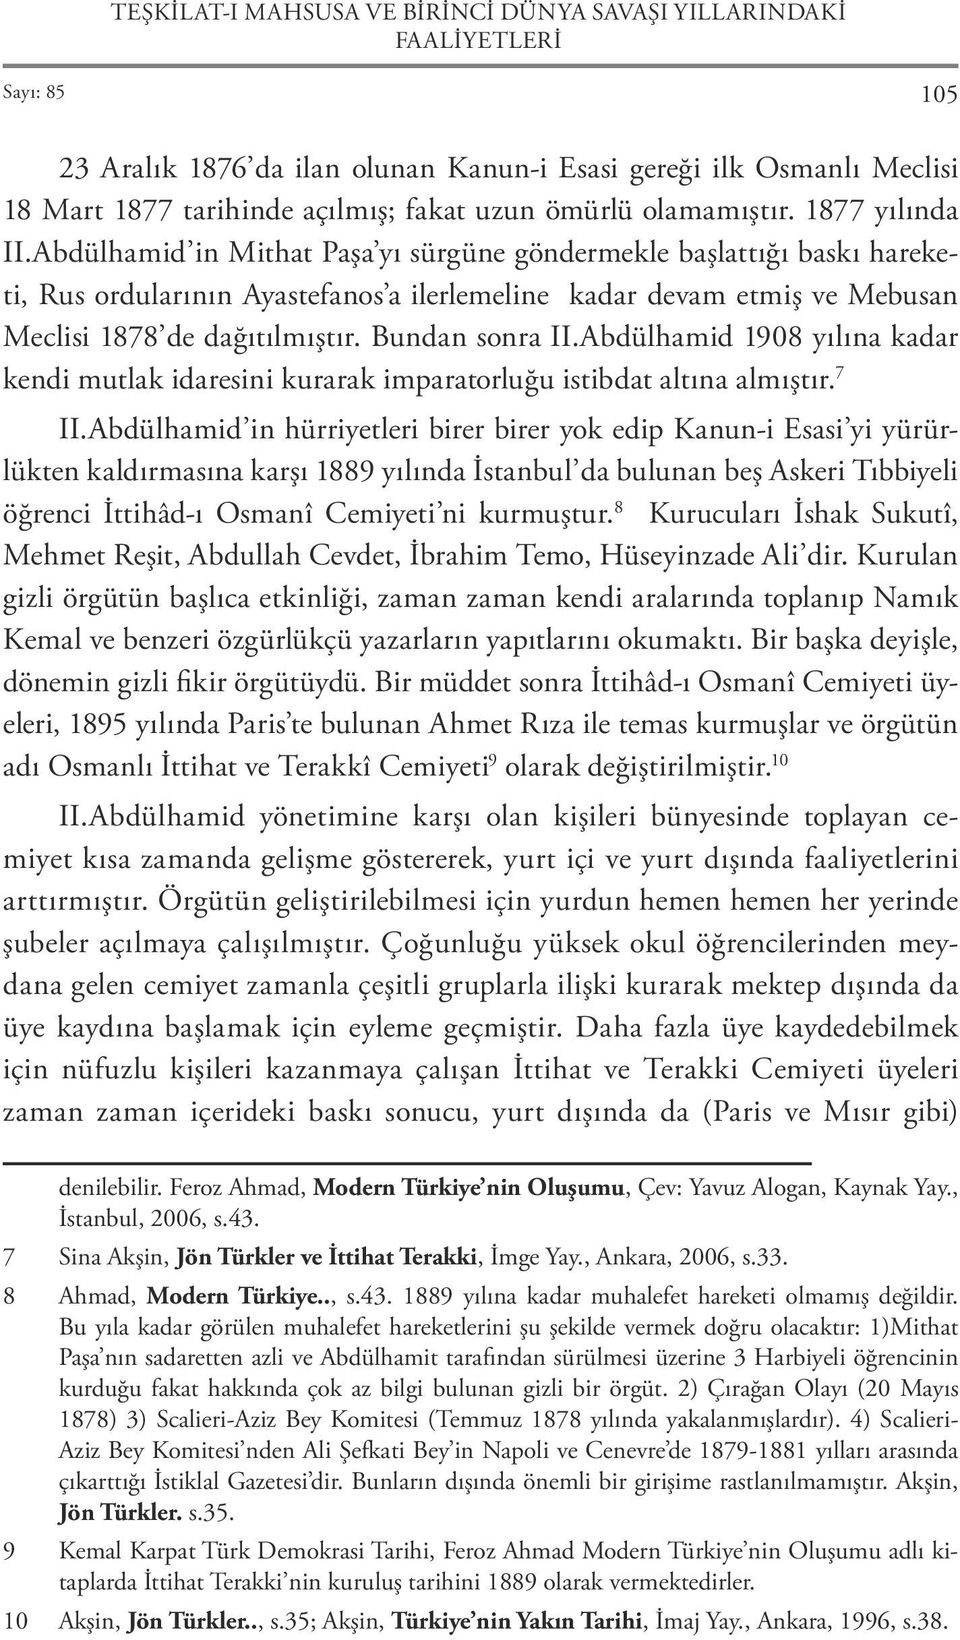 Abdülhamid in Mithat Paşa yı sürgüne göndermekle başlattığı baskı hareketi, Rus ordularının Ayastefanos a ilerlemeline kadar devam etmiş ve Mebusan Meclisi 1878 de dağıtılmıştır. Bundan sonra II.